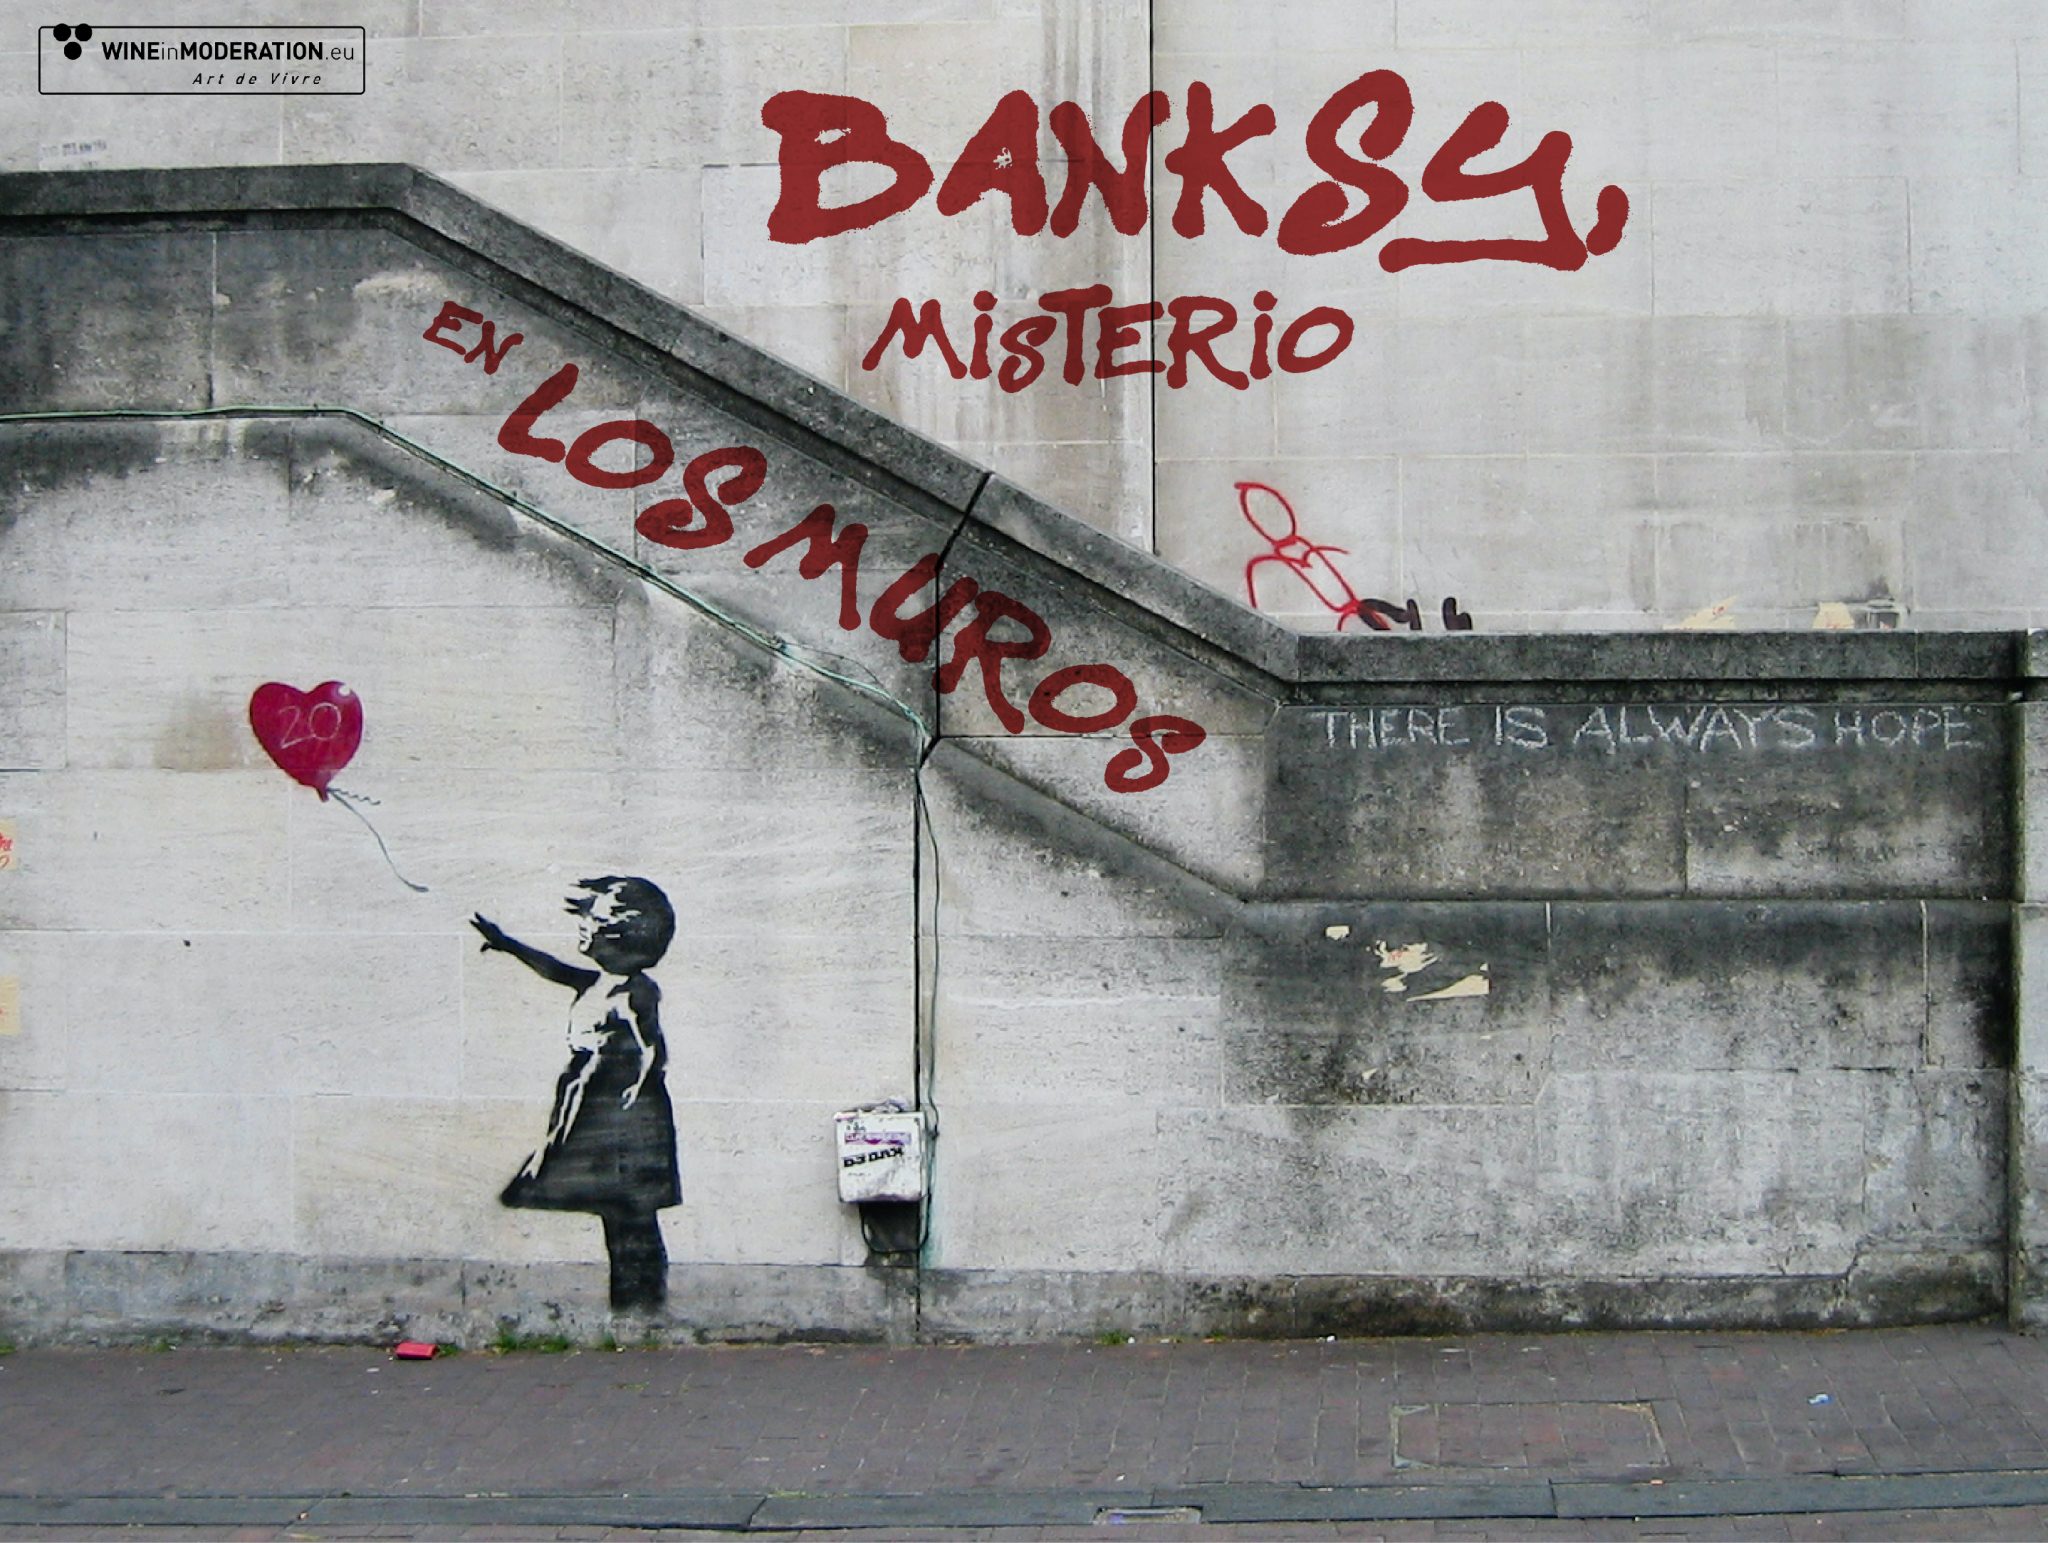 Banksy, misterio en los muros